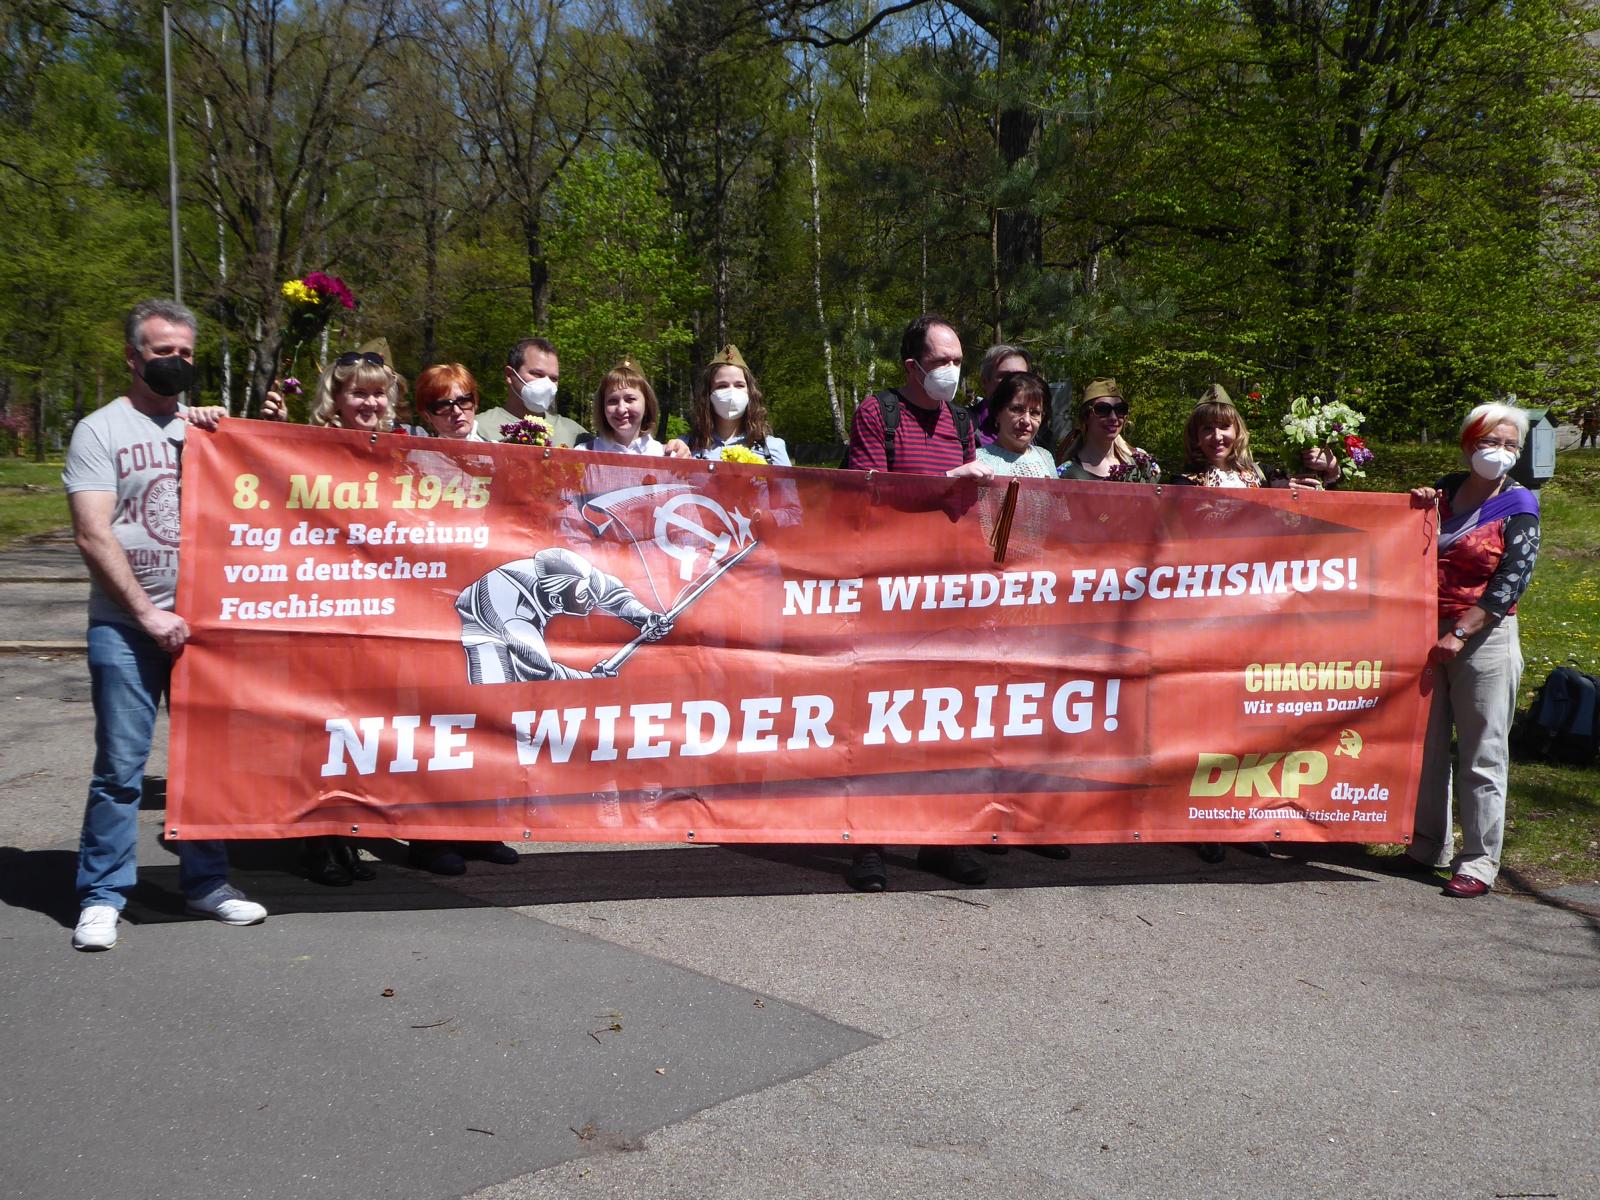 nuernberg 1 - Wer nicht feiert, hat verloren - Antifaschismus, Friedenskampf, Geschichte der Arbeiterbewegung - Blog, DKP in Aktion